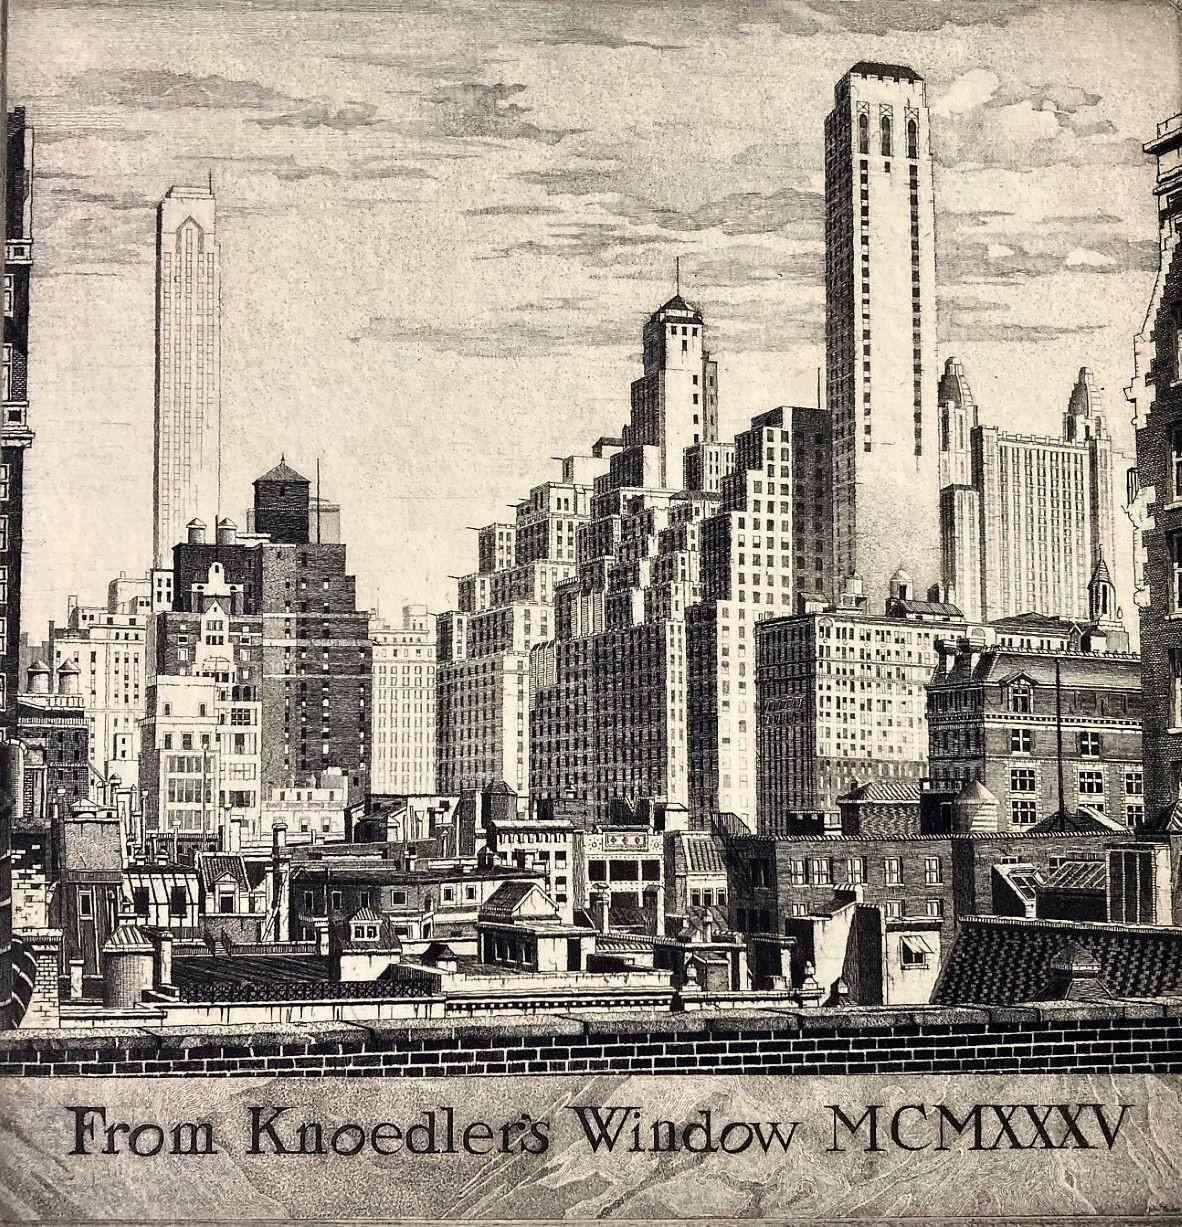 Knoedler's Window MCMXXXV